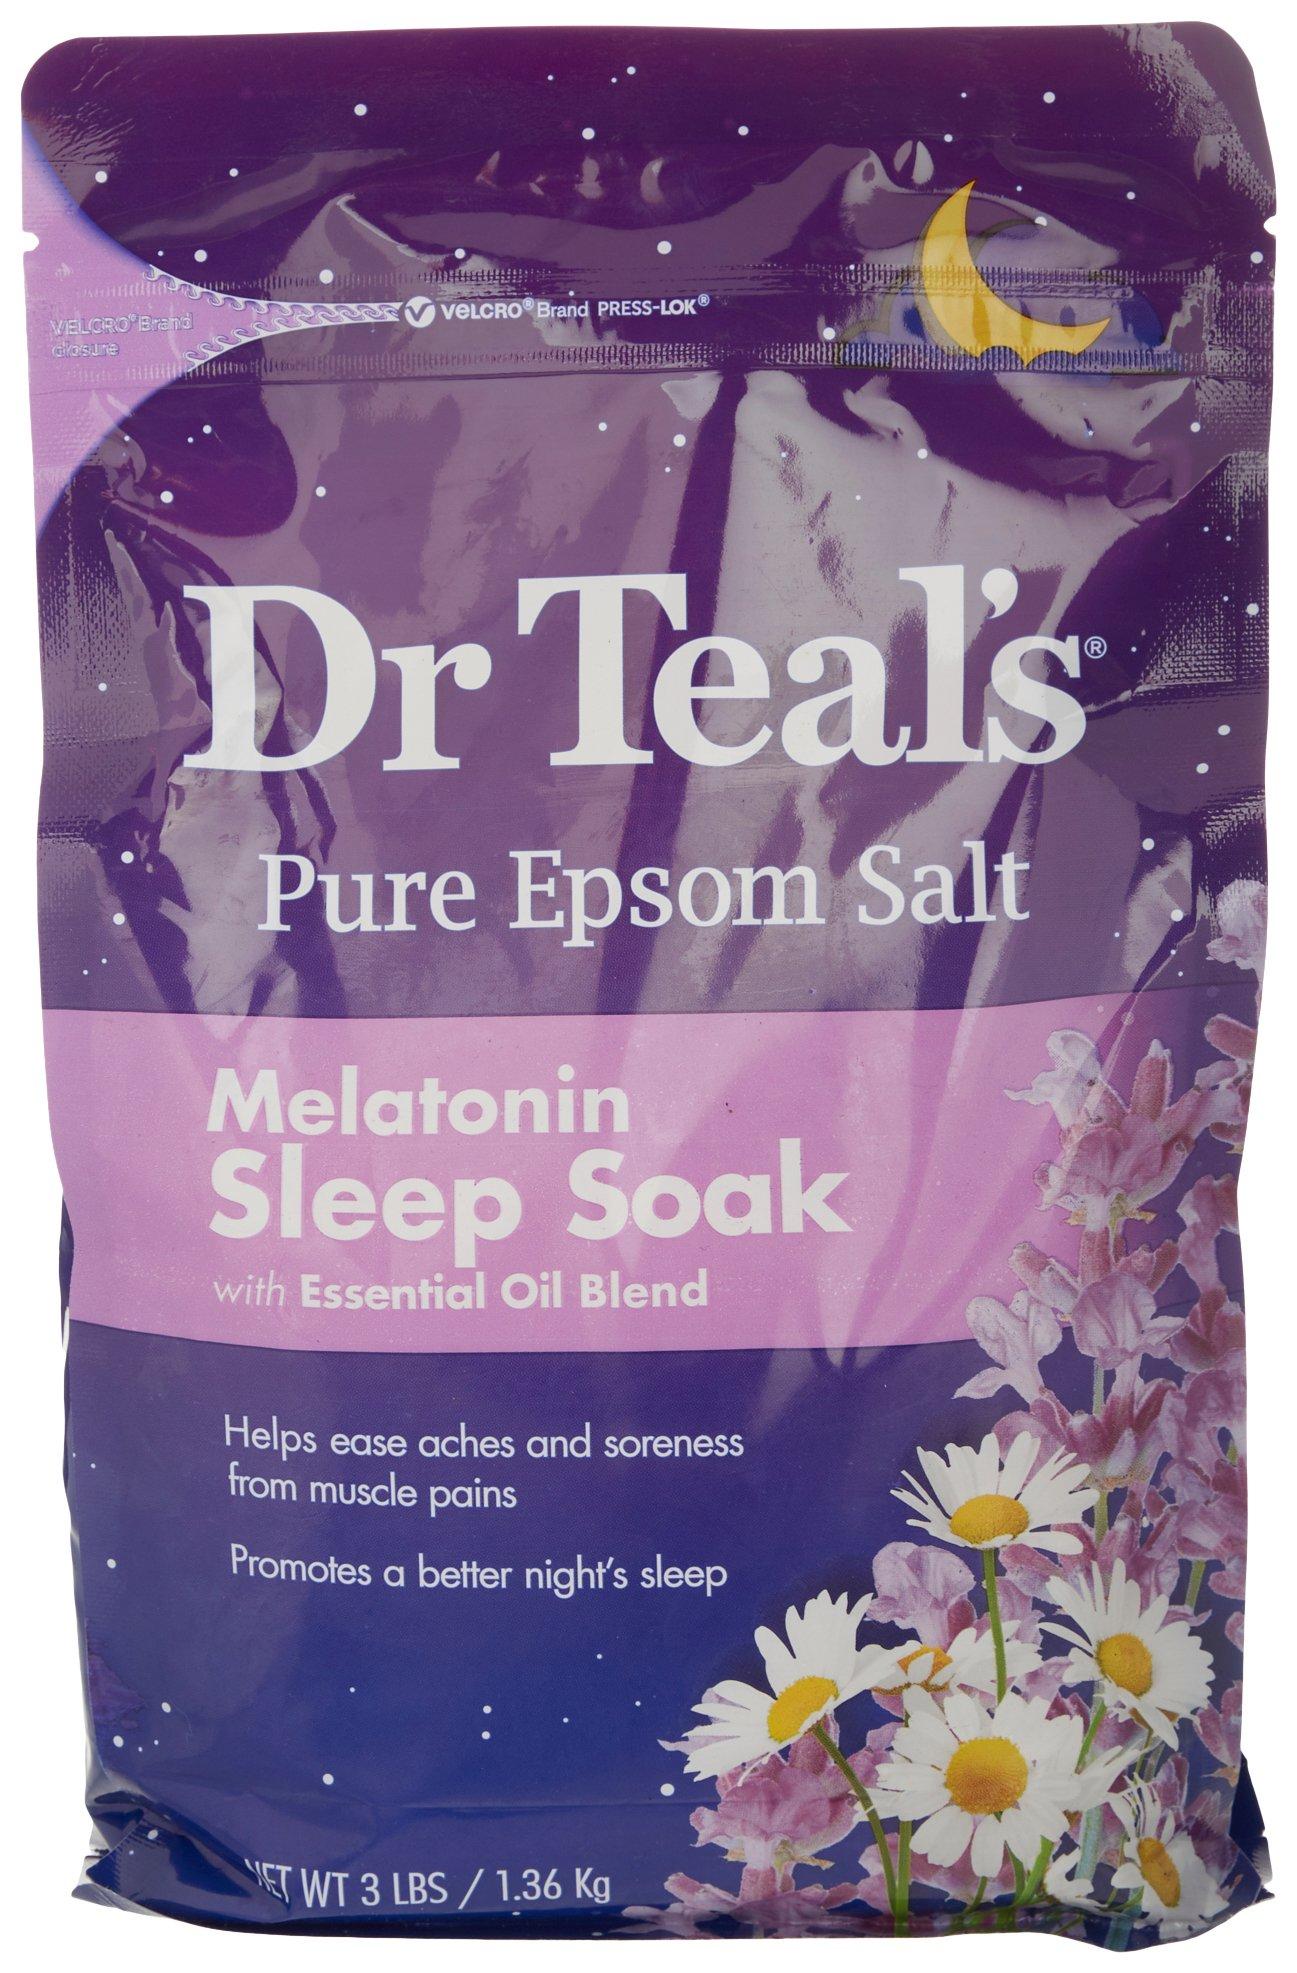 Dr. Teals Pure Epsom Salt Melatonin Sleep Soak